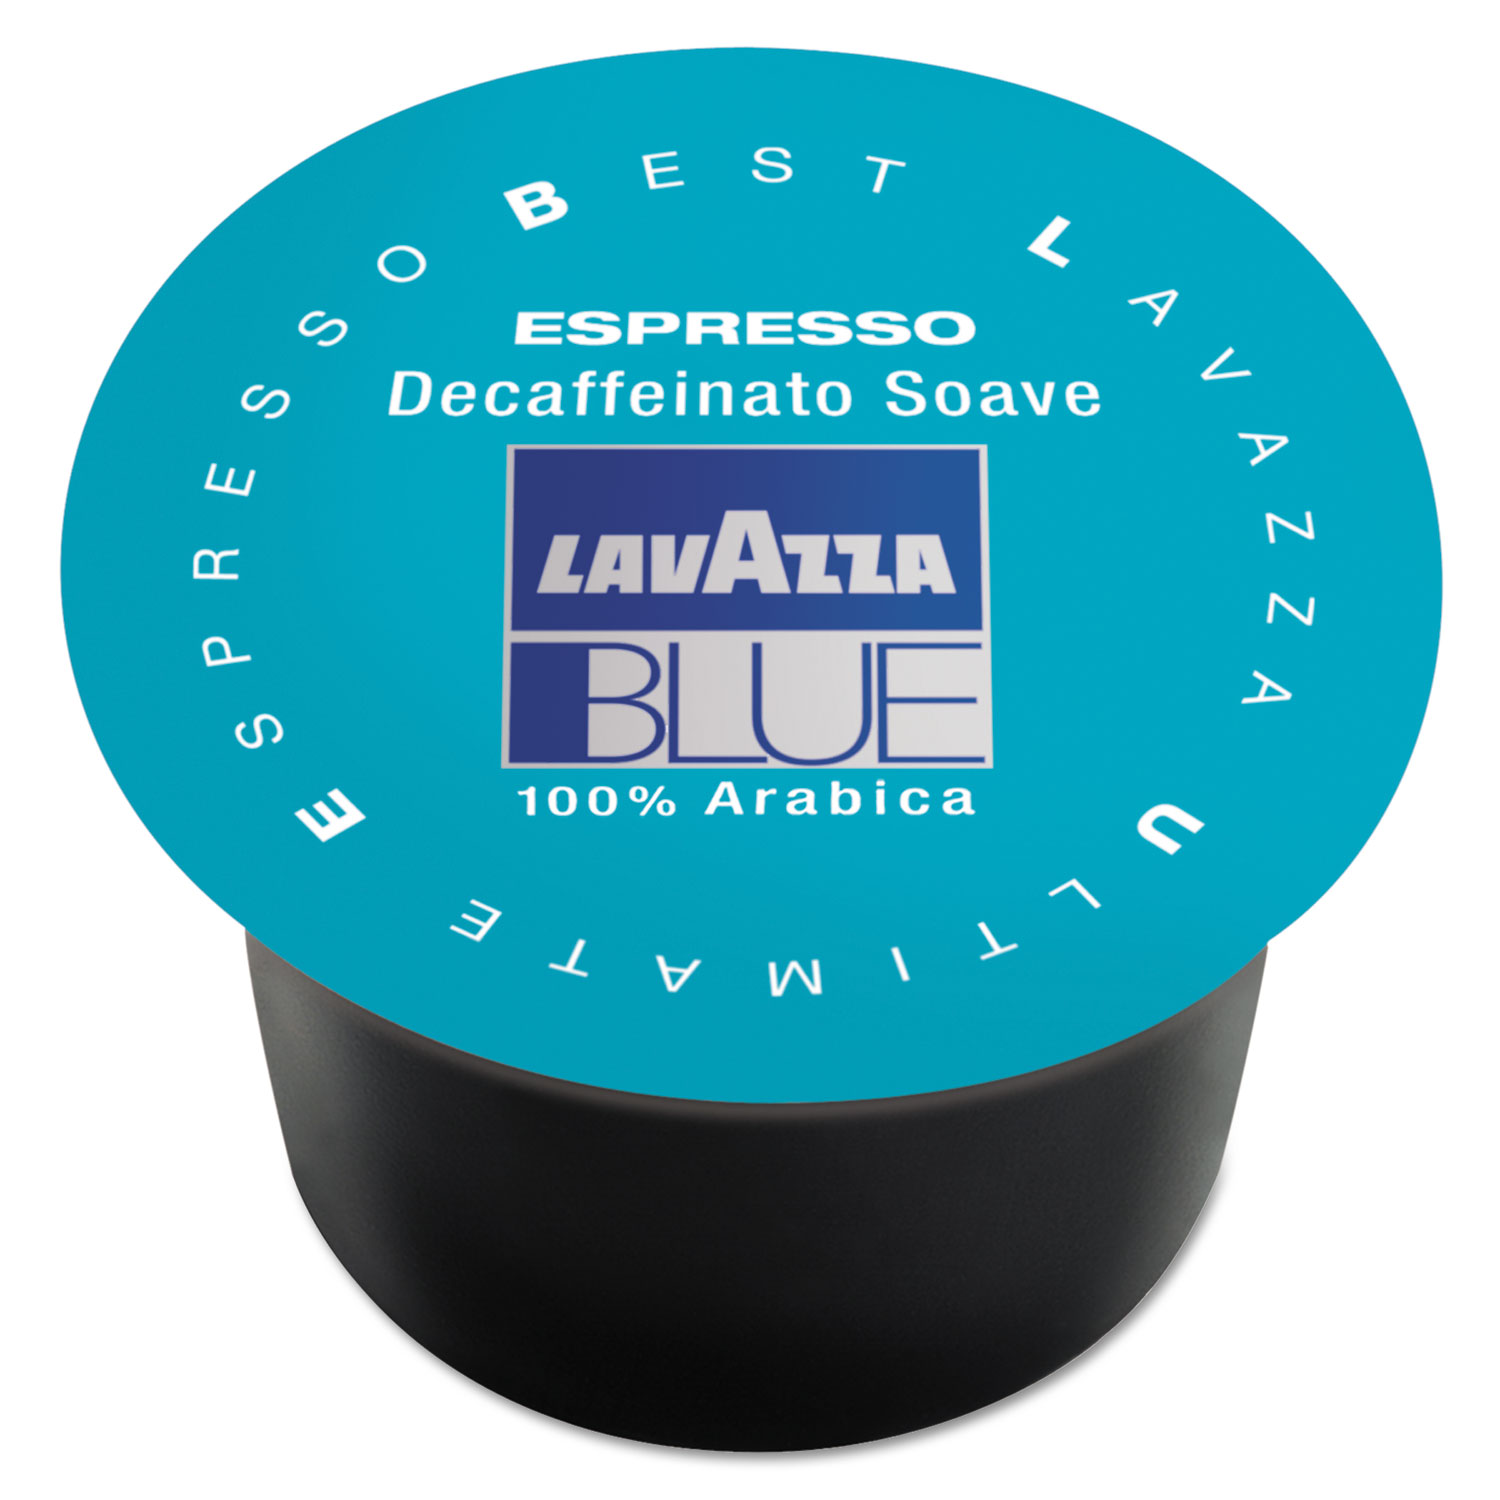  Lavazza 910 BLUE Espresso Capsules, Capsules, Decaffeinated Medium Roast, 8g, 100/Box (LAV910) 